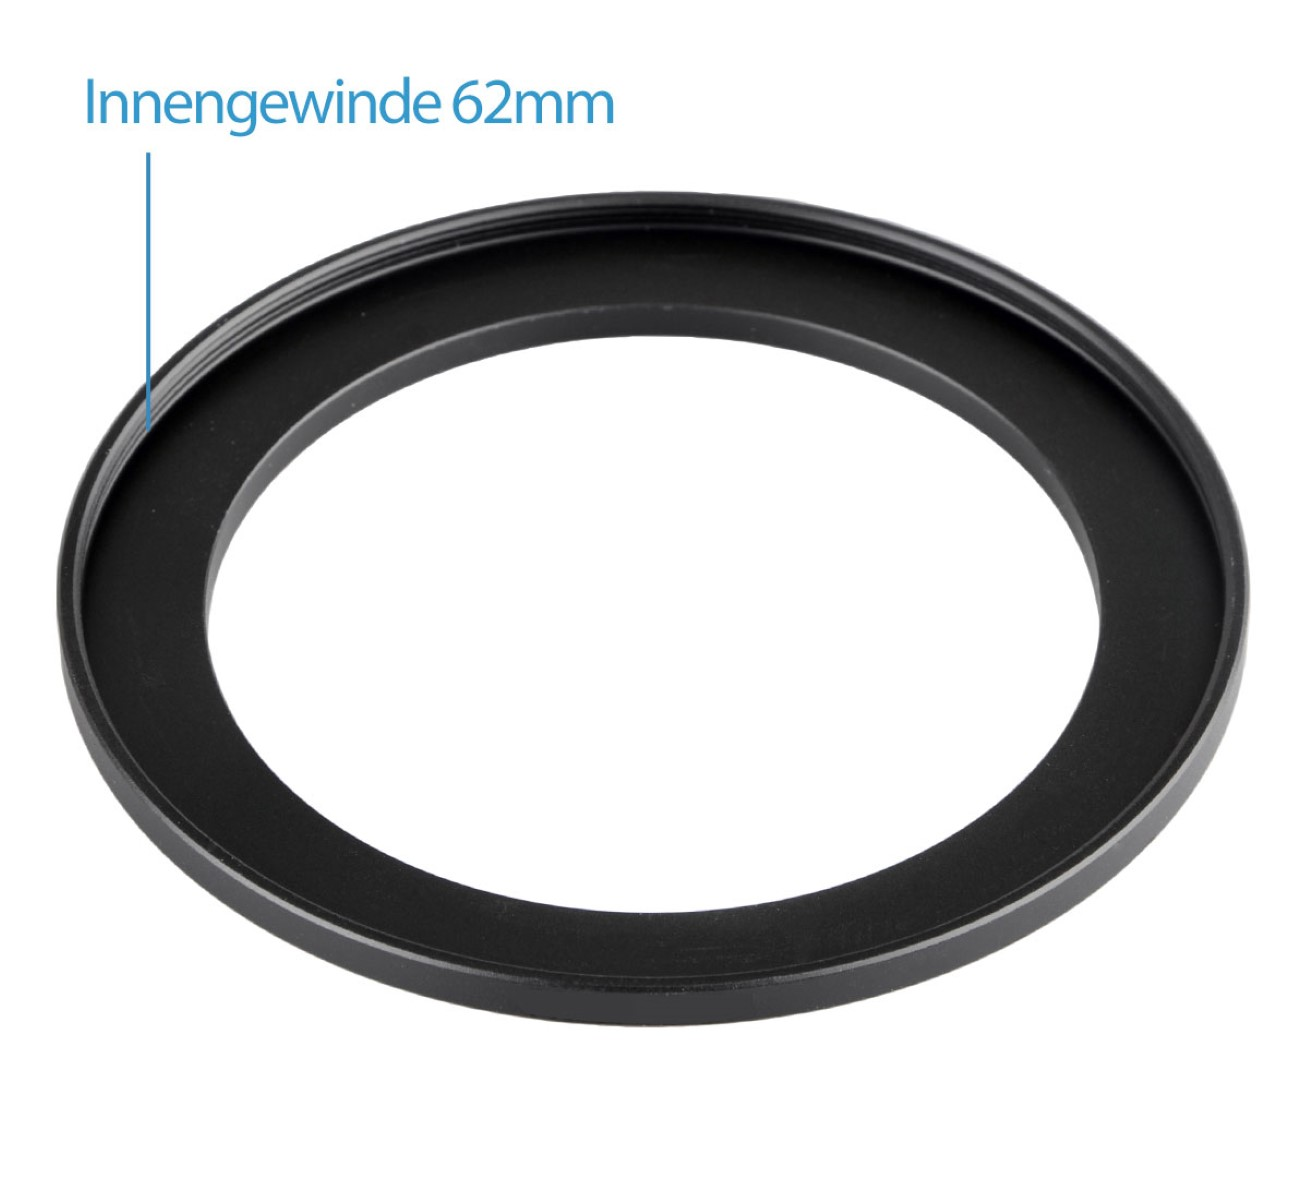 AYEX Step-Up Ring, Objektive Step-Up, für Filtergewinde Black, mit passend